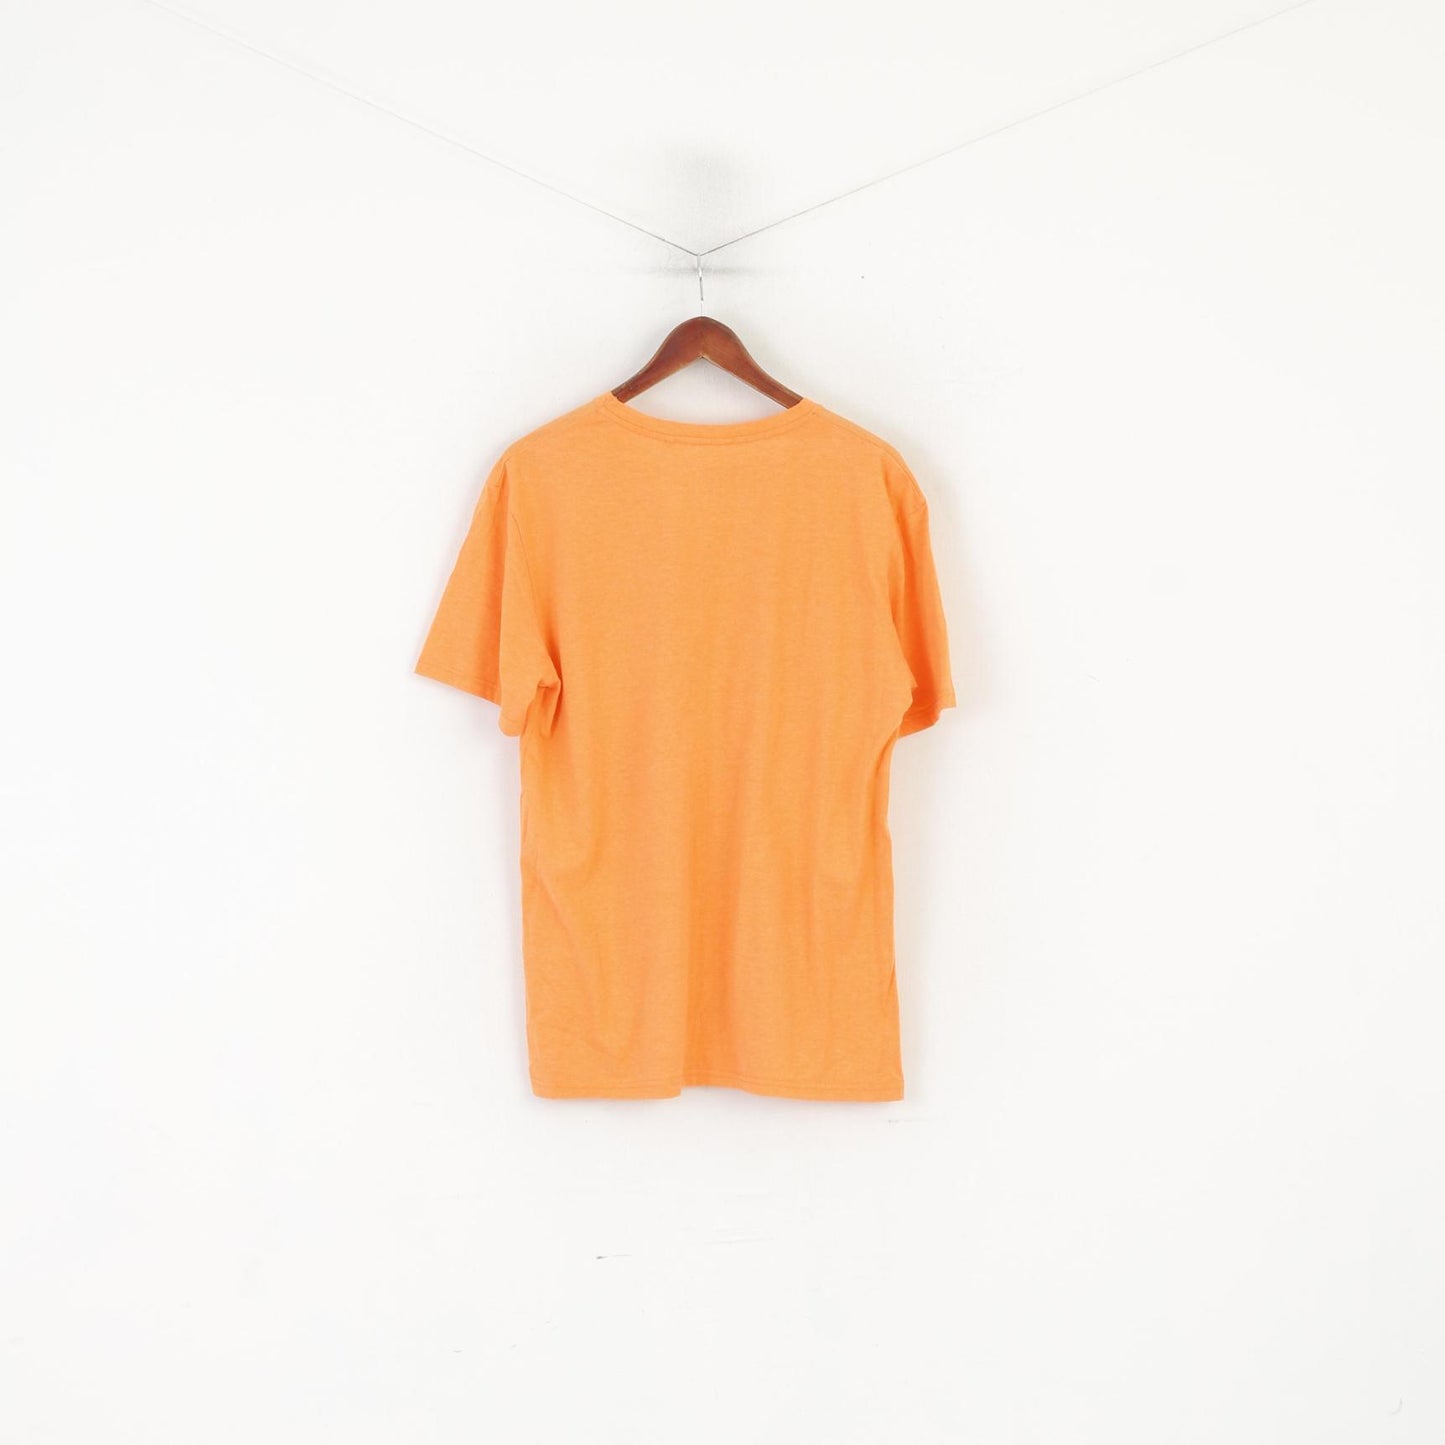 Industrialize Men L Shirt Orange Cotton Graphic Miami LA Summer Top